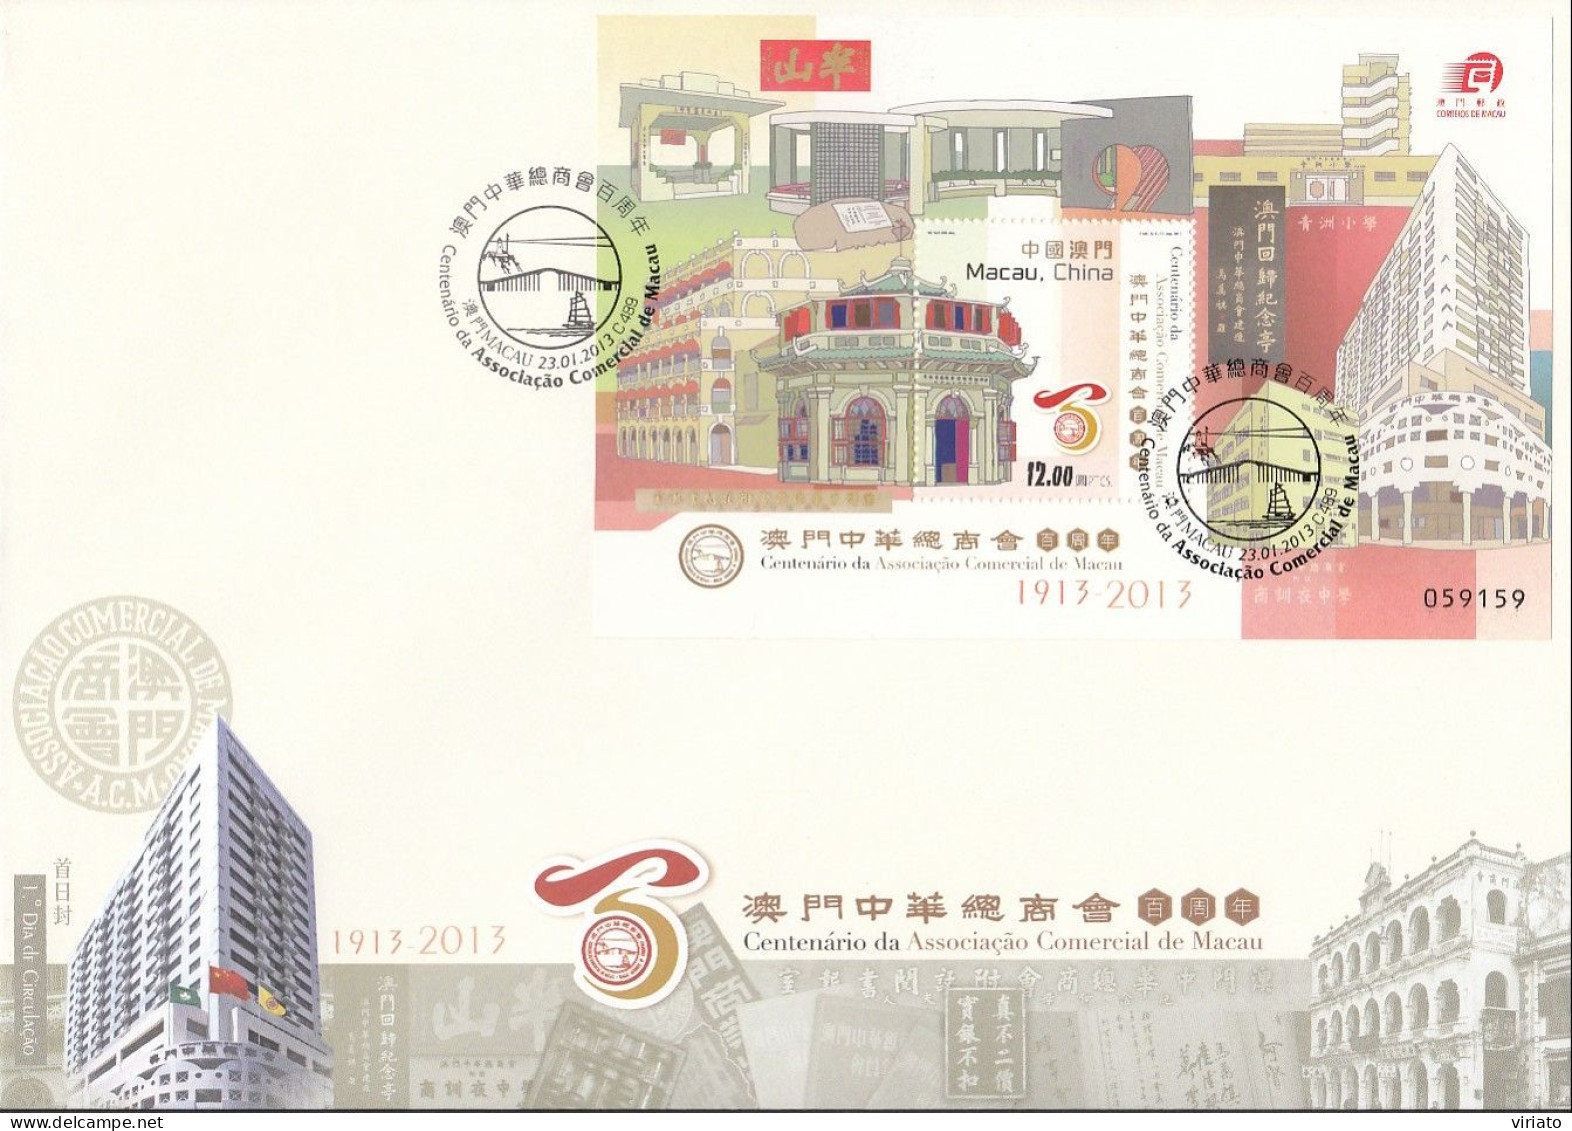 ENB138 - Centenário Da Associação Comercial De Macau - 23.01.2013 - FDC